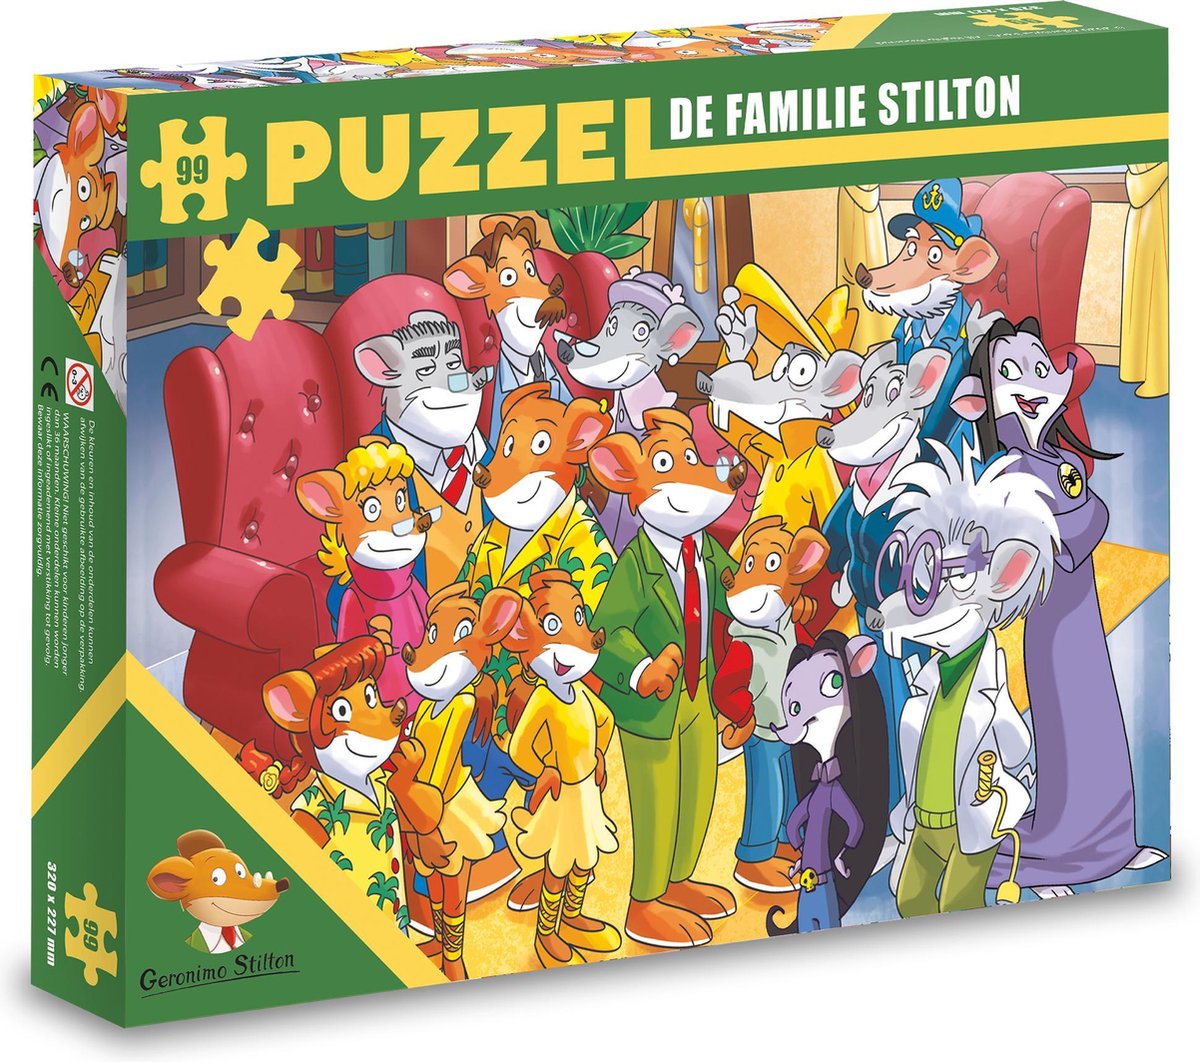 Puzzel – De familie Stilton (99)